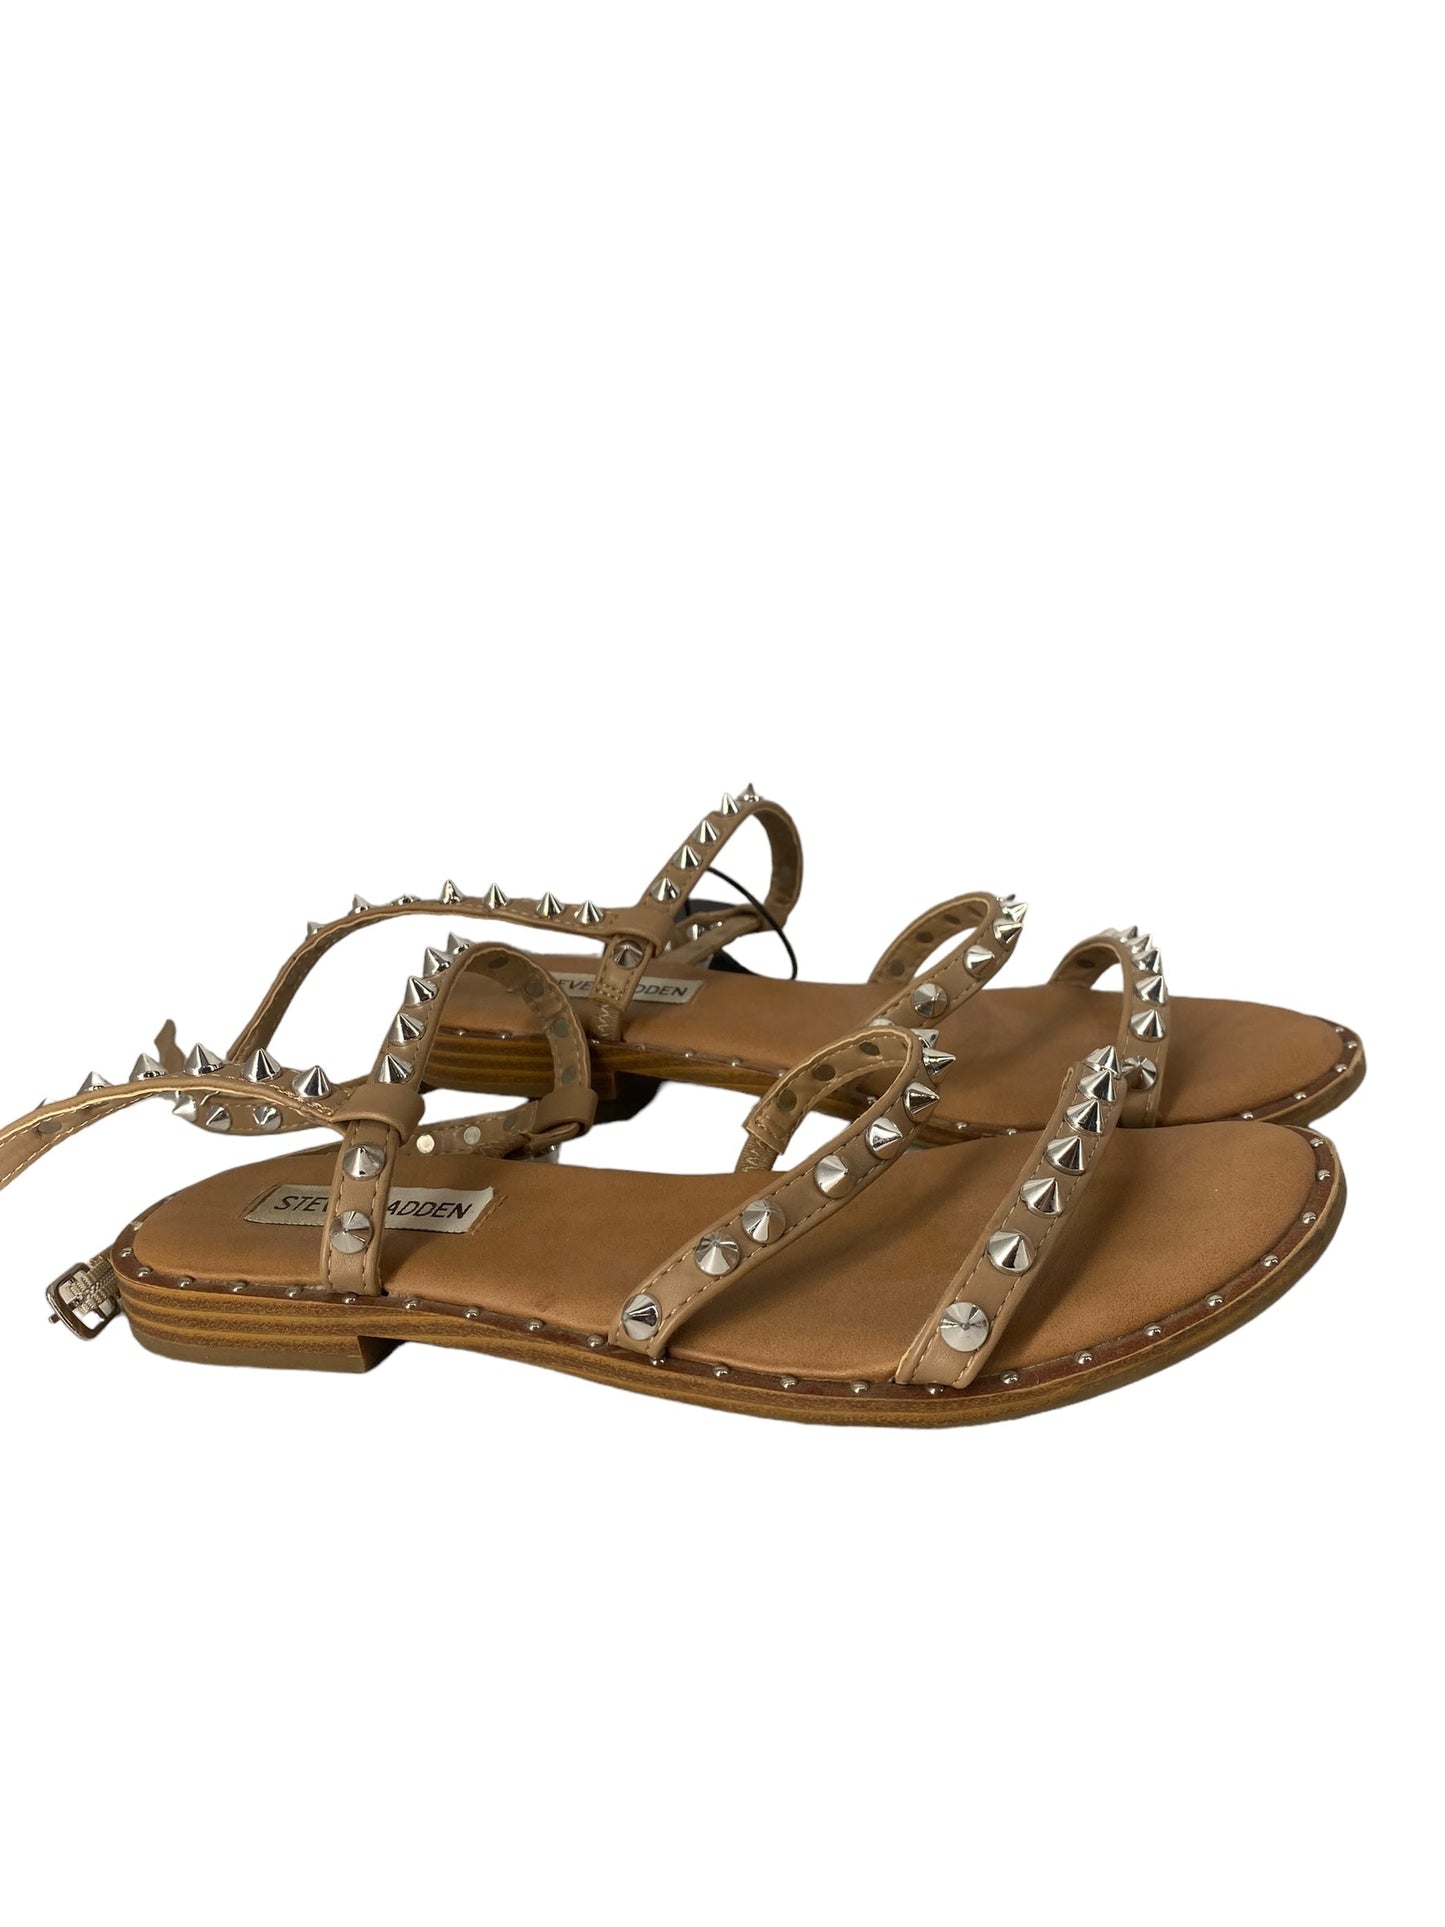 Tan Sandals Flats Steve Madden, Size 6.5